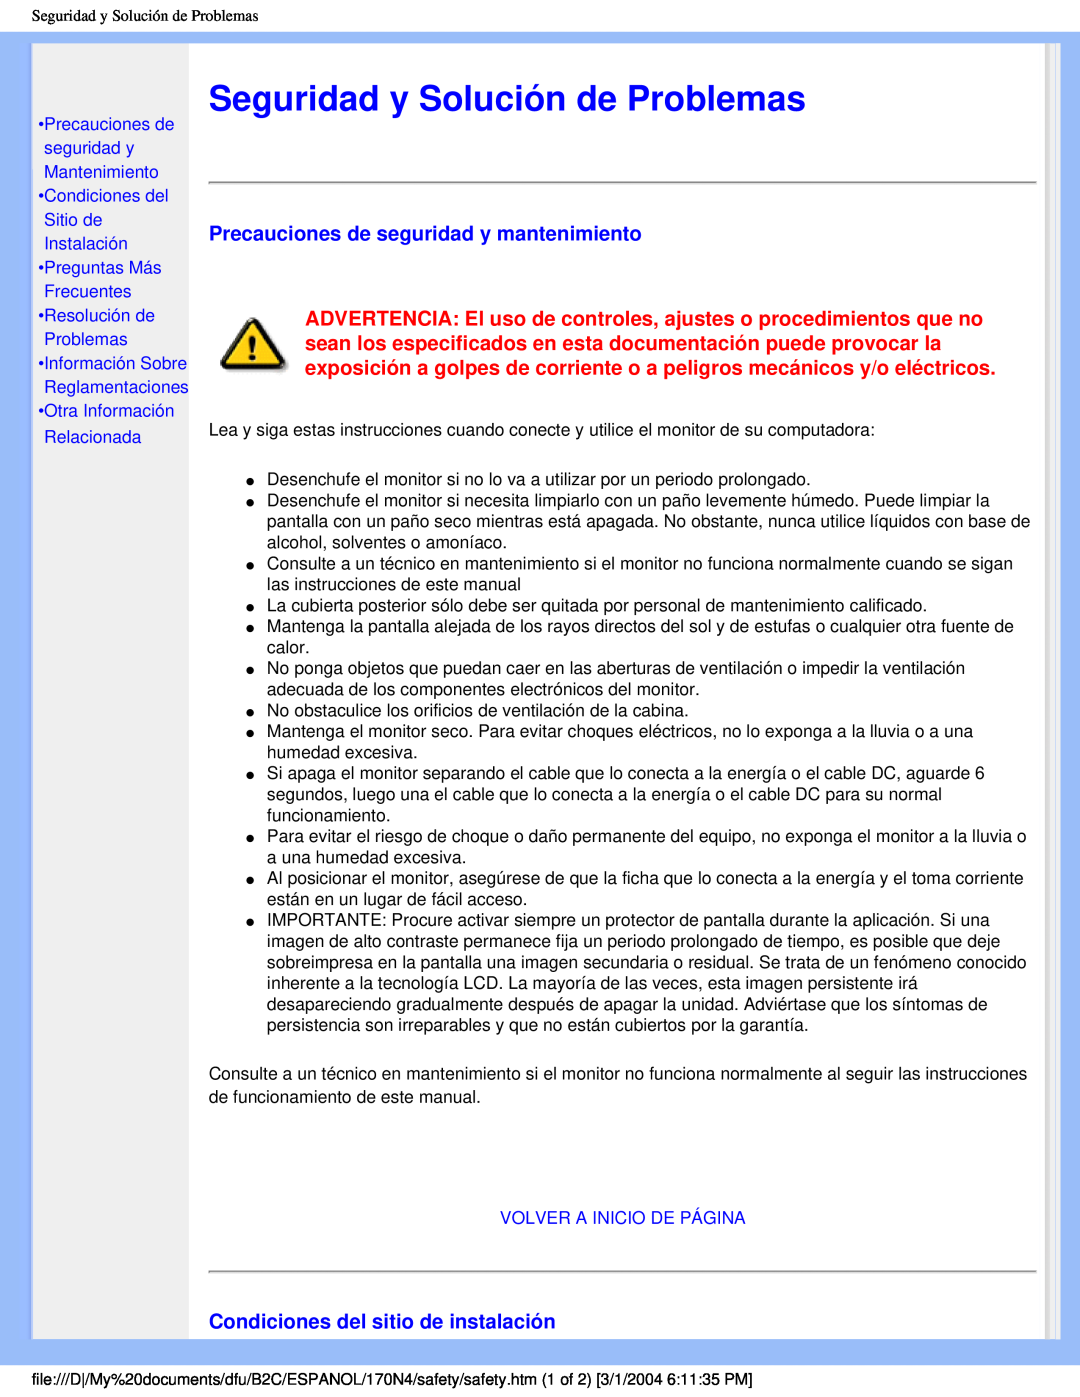 Philips 170N4 Seguridad y Solución de Problemas, Precauciones de seguridad y mantenimiento, Volver A Inicio De Página 